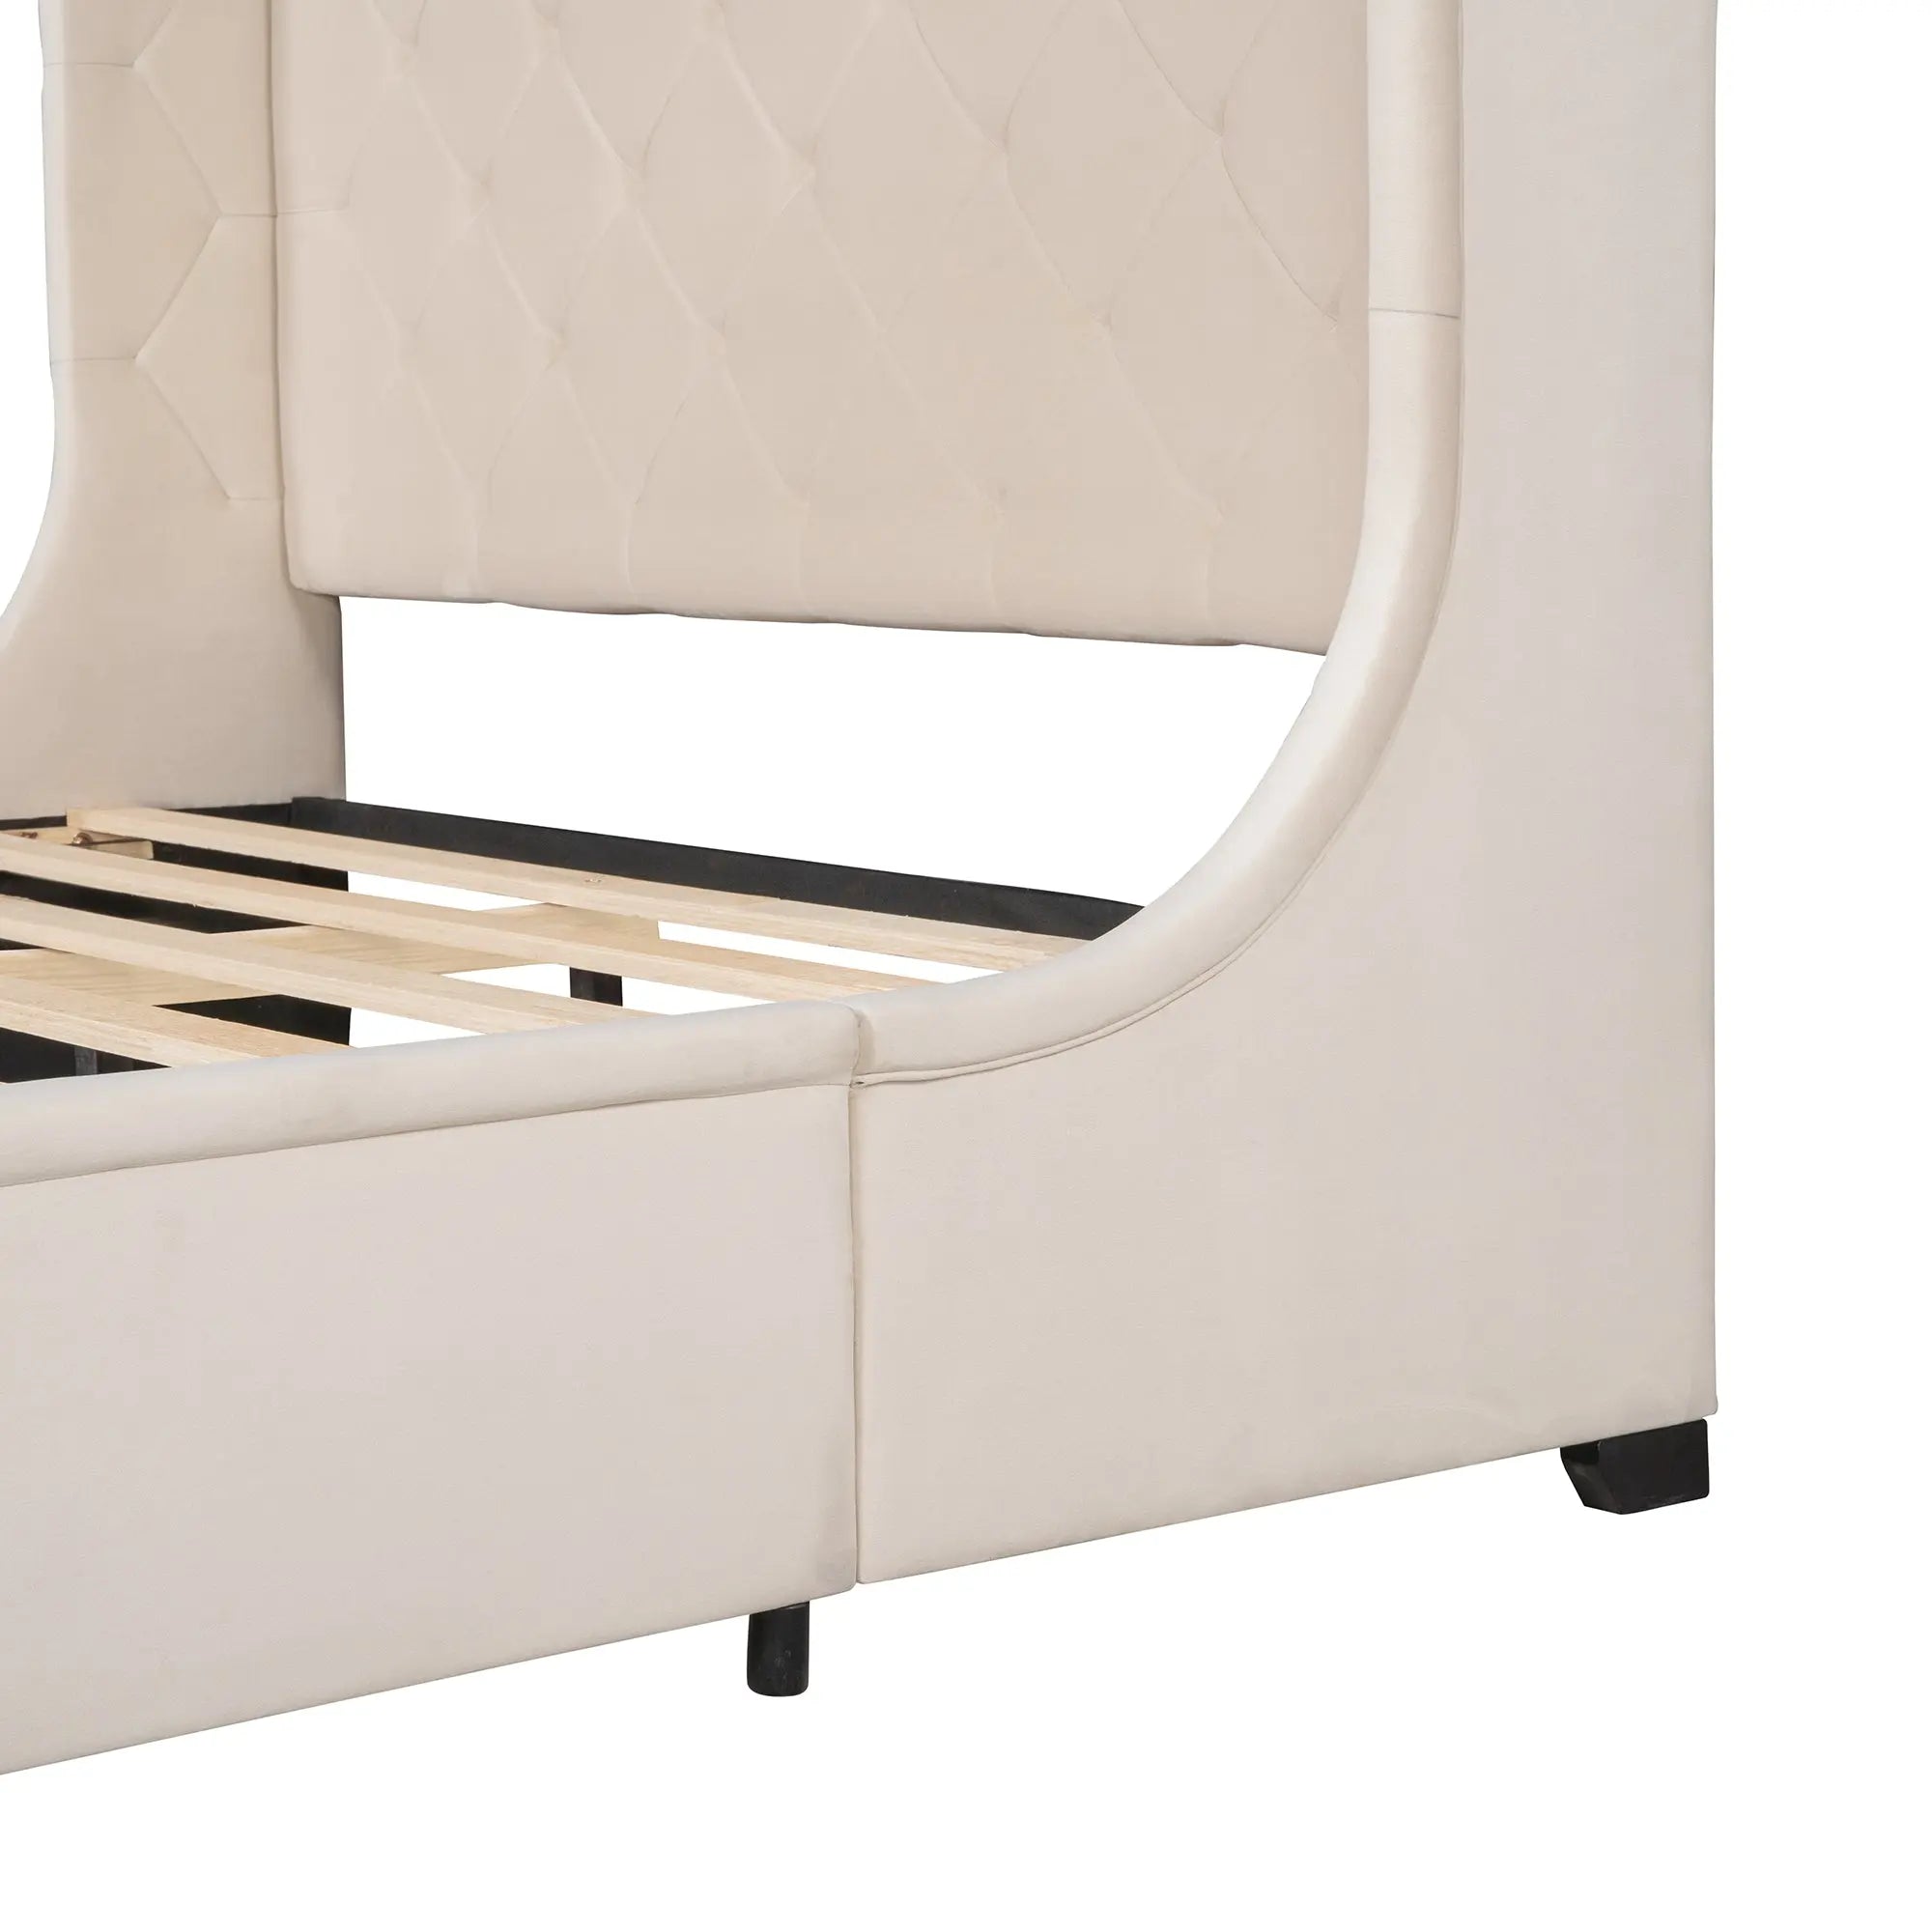 Bellemave® Queen Size Velvet Upholstered Platform Bed